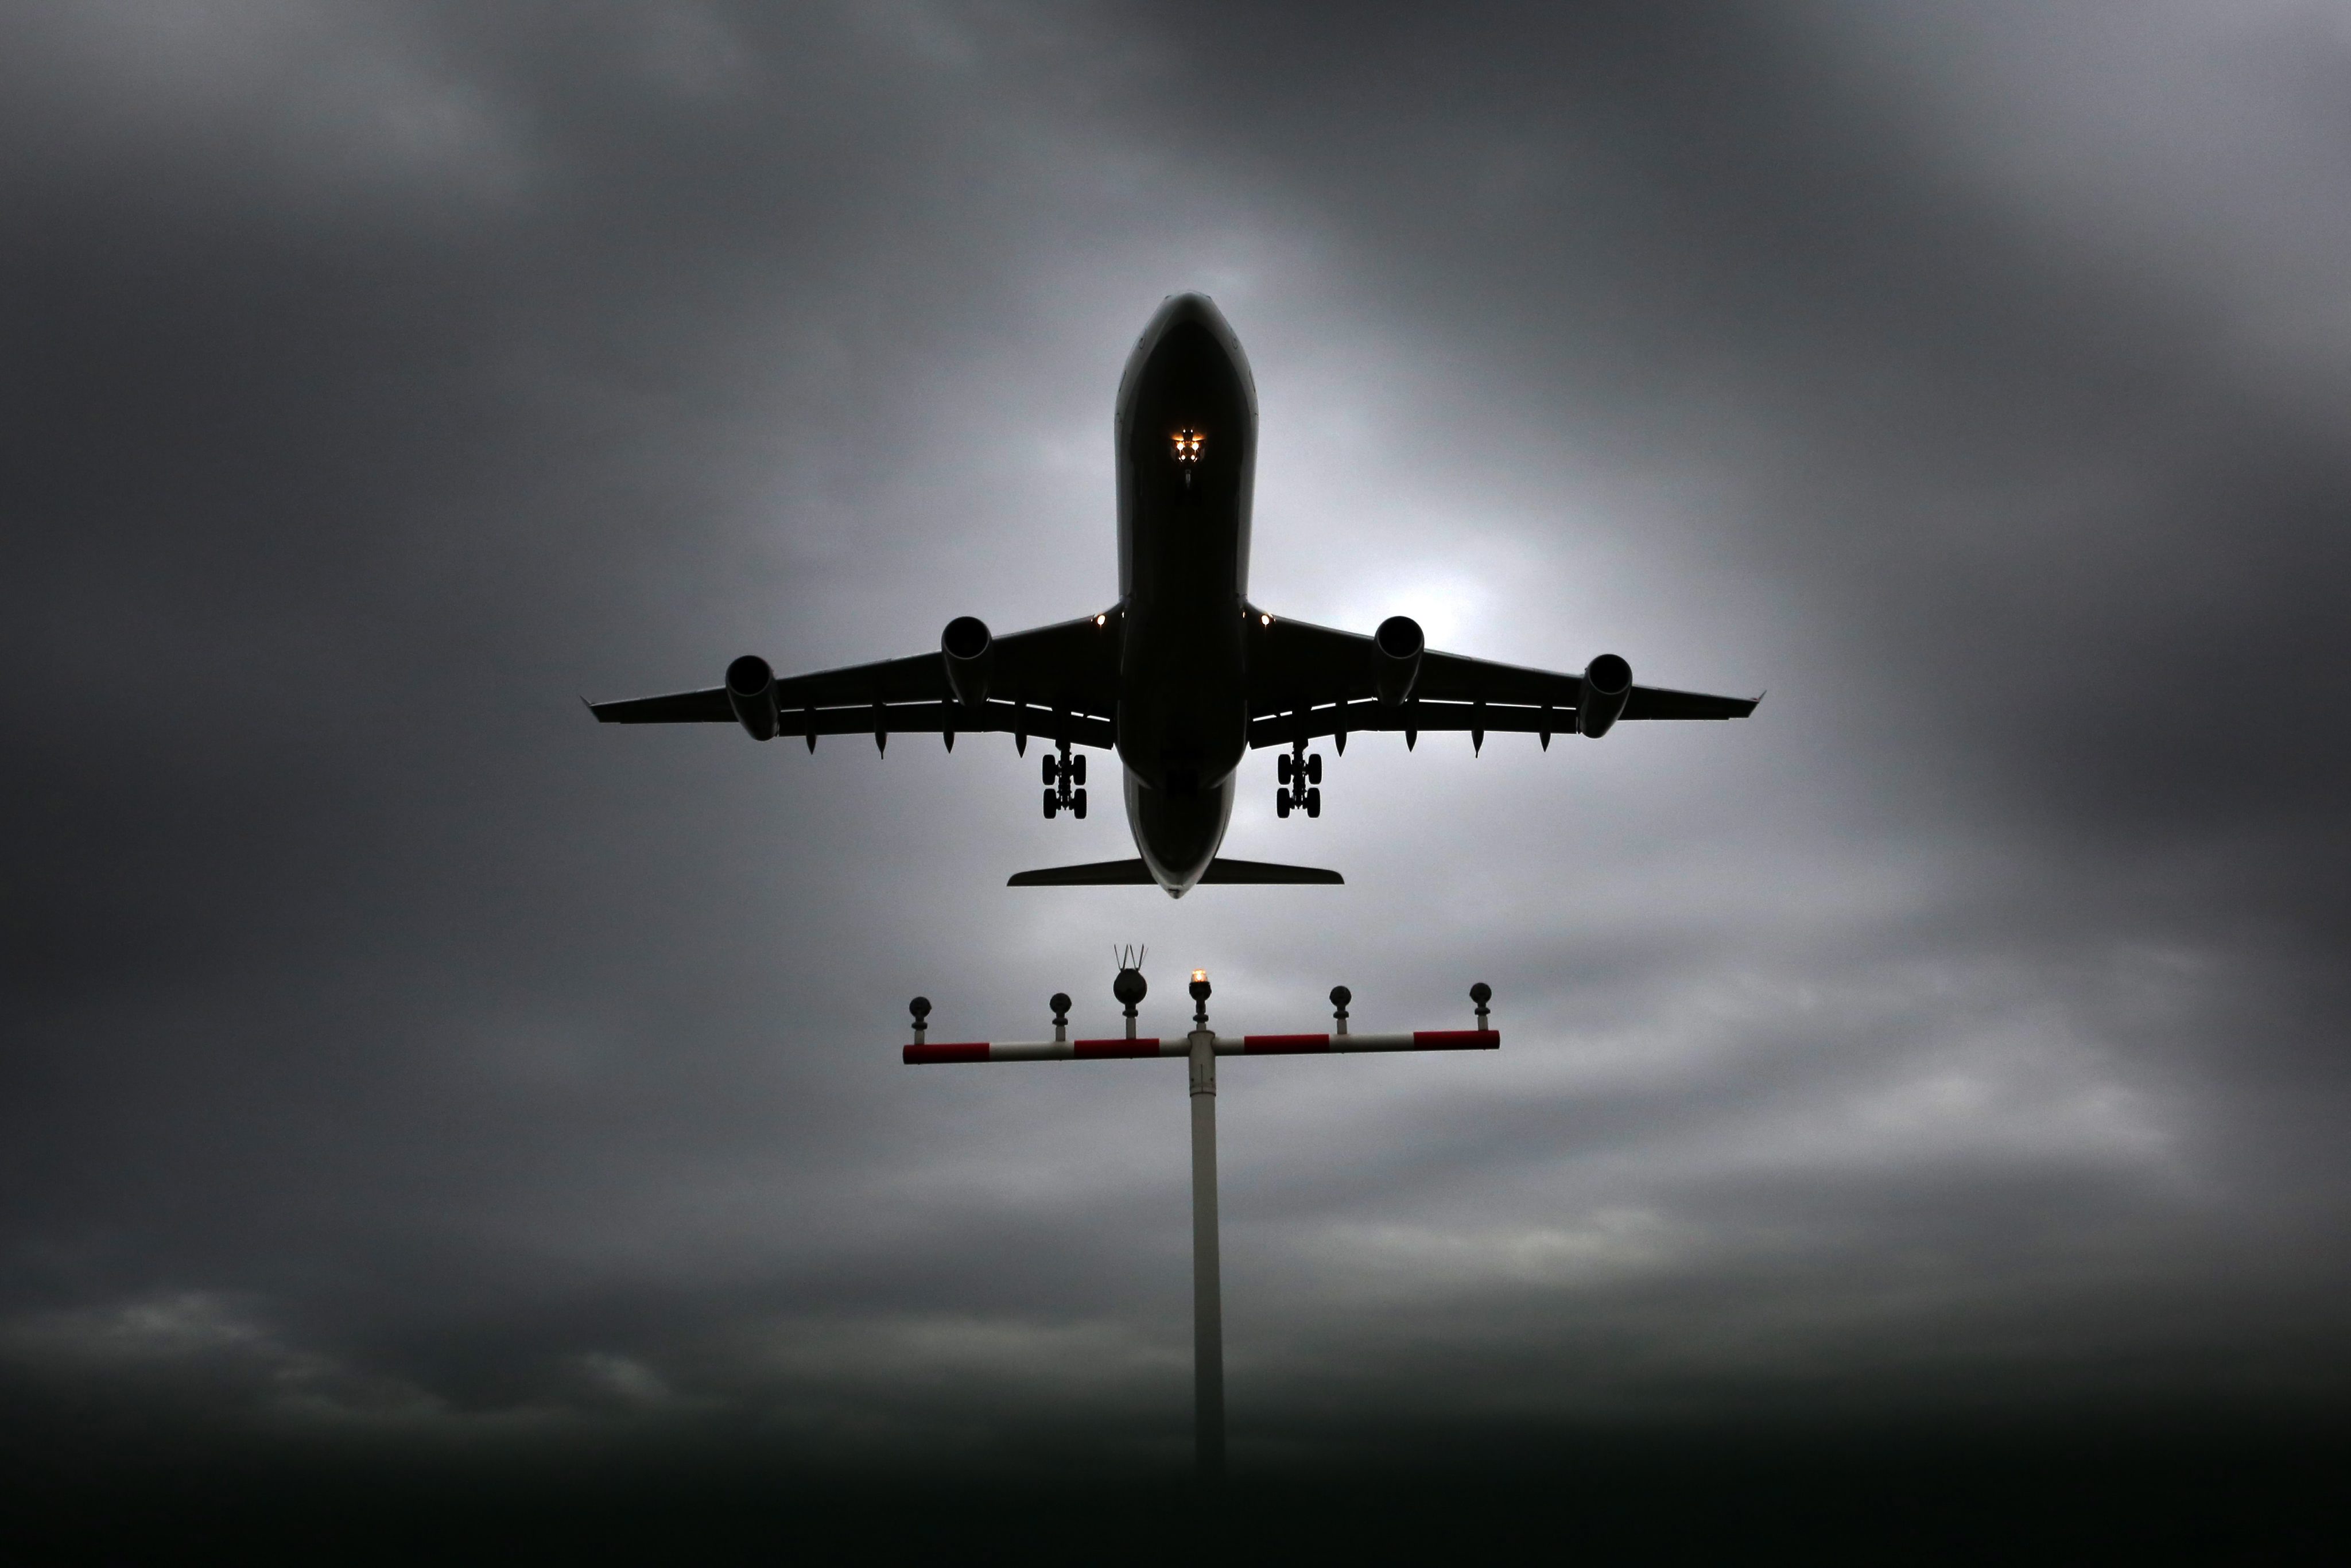 Aeroportos portugueses com restrições nas descolagens